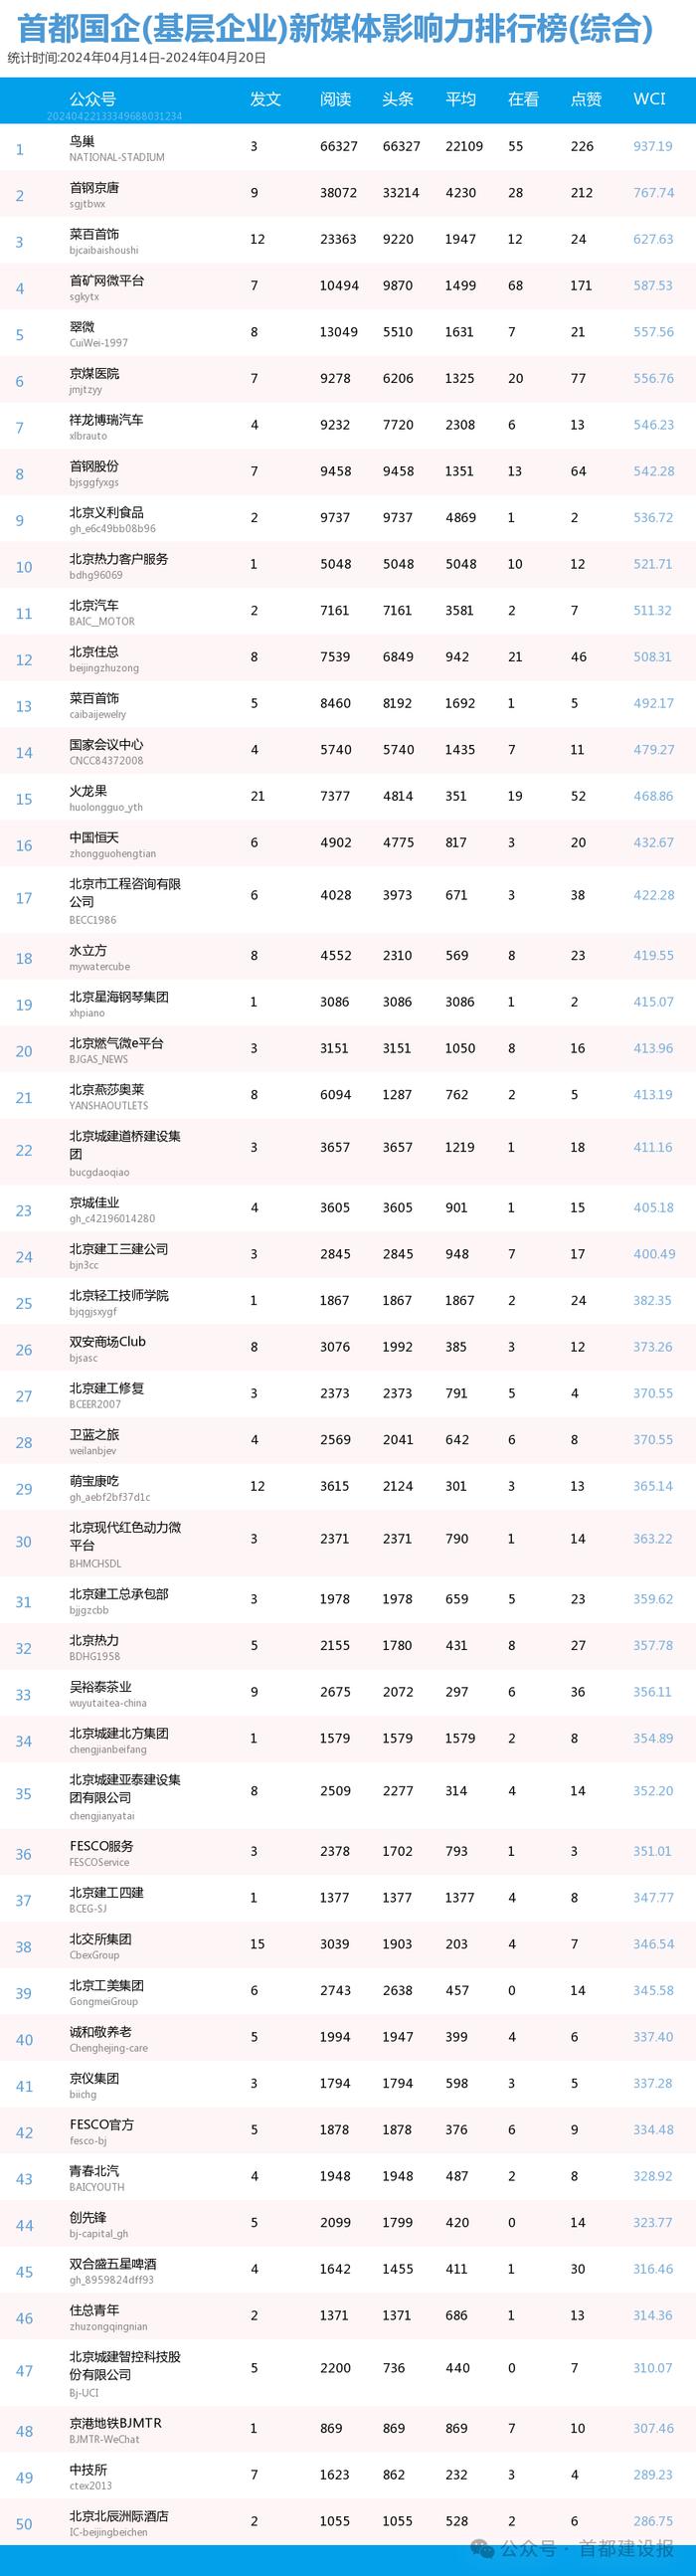 【北京国企新媒体影响力排行榜】4月周榜(4.14-4.20)第404期